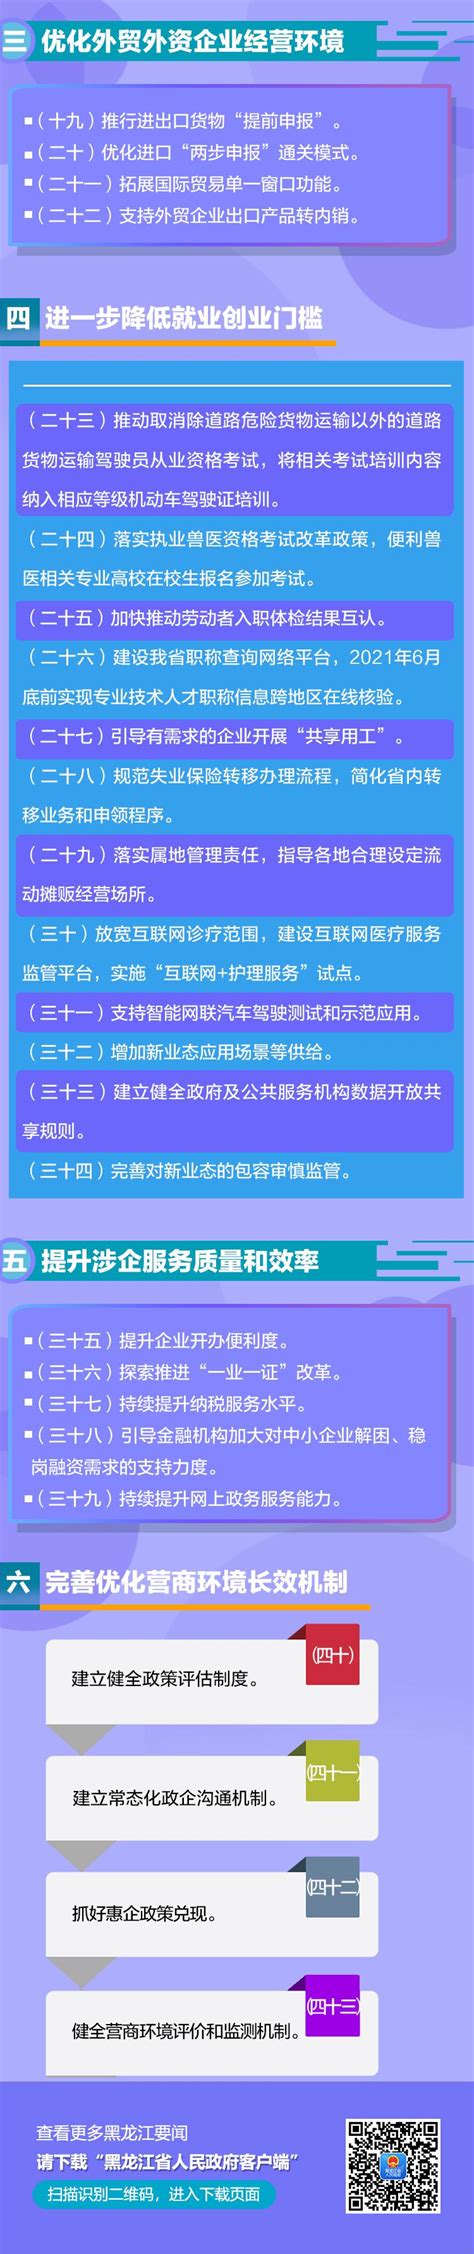 黑龙江省制定价格成本监审目录 - 国家发展和改革委员会价格成本调查中心